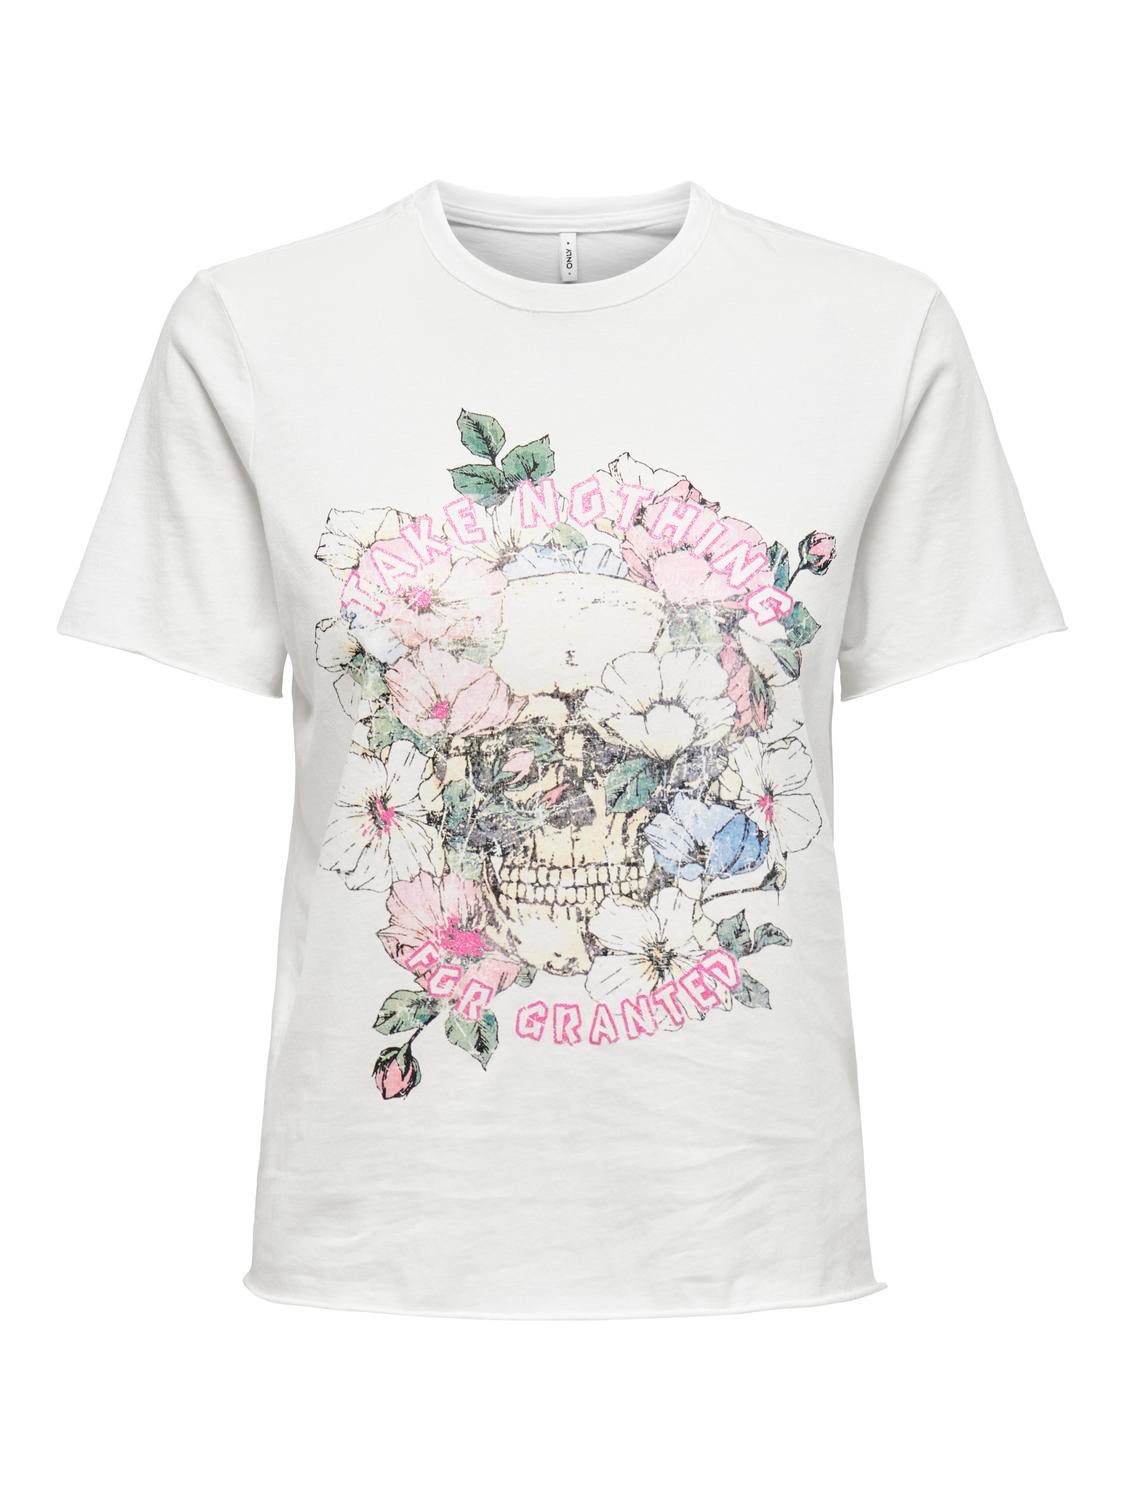 ONLY O-hals t-shirt med print -Cloud Dancer - 15307412